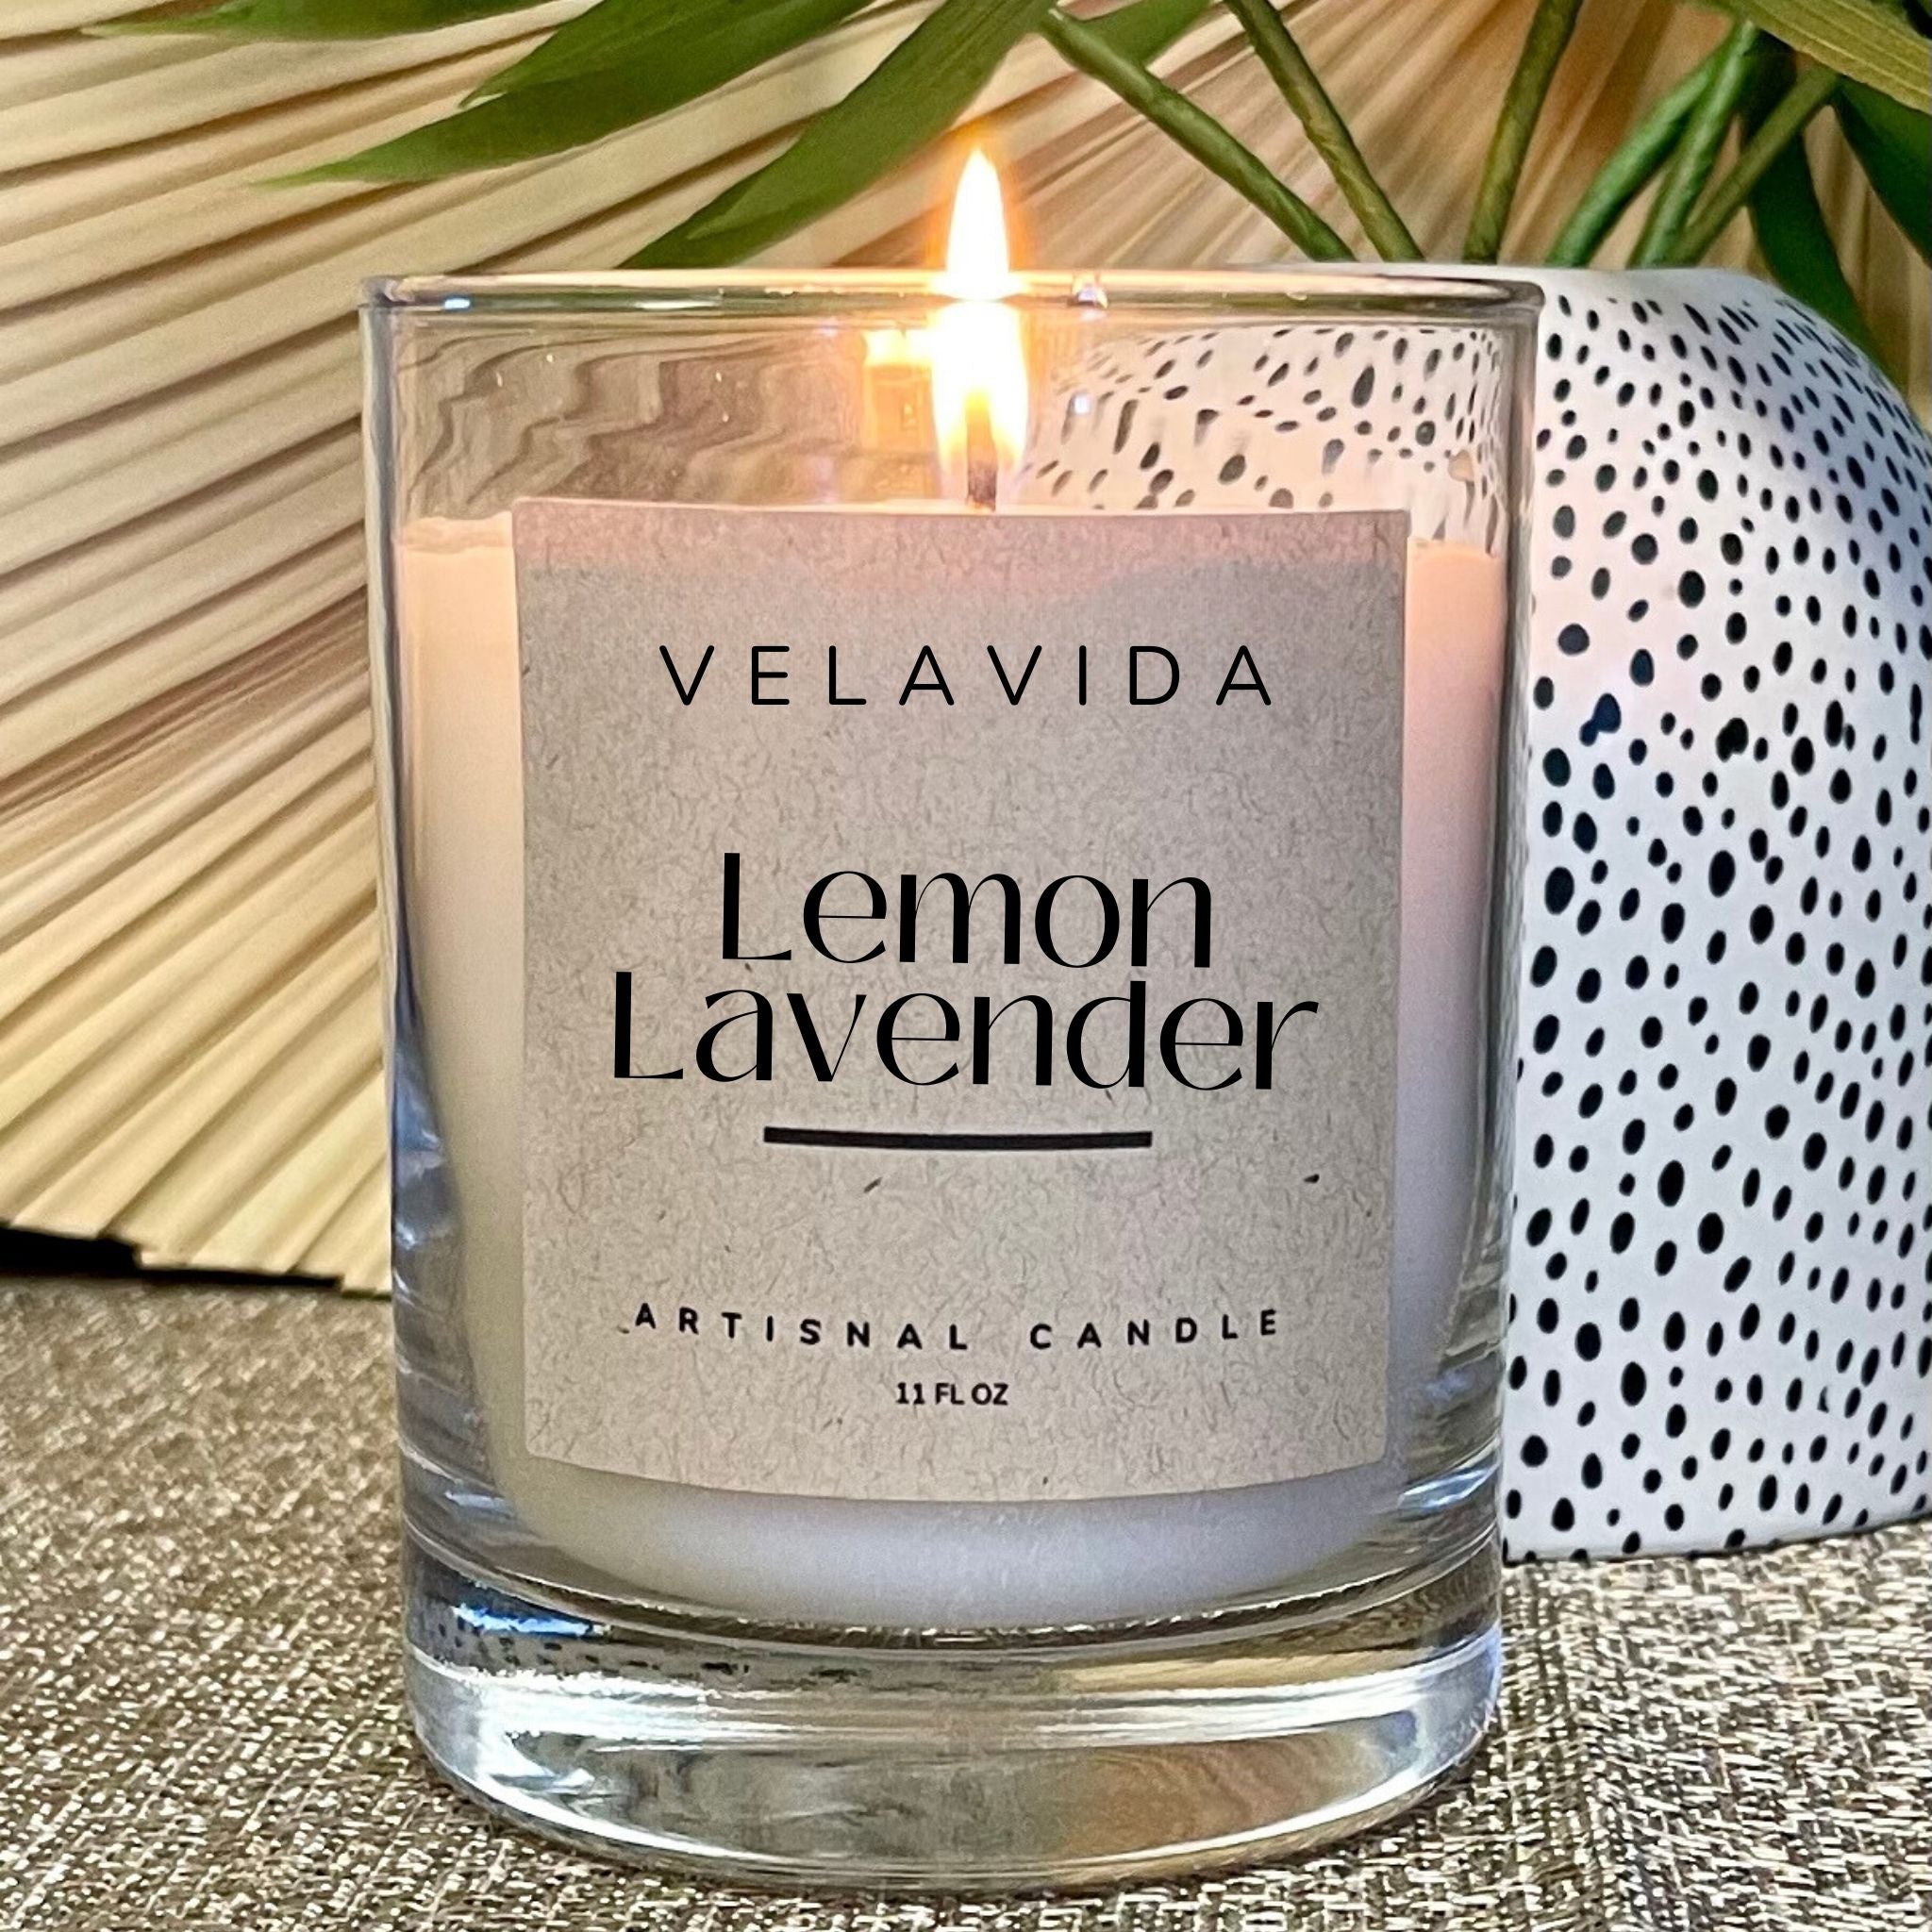 Lemon Lavender Classic Candle